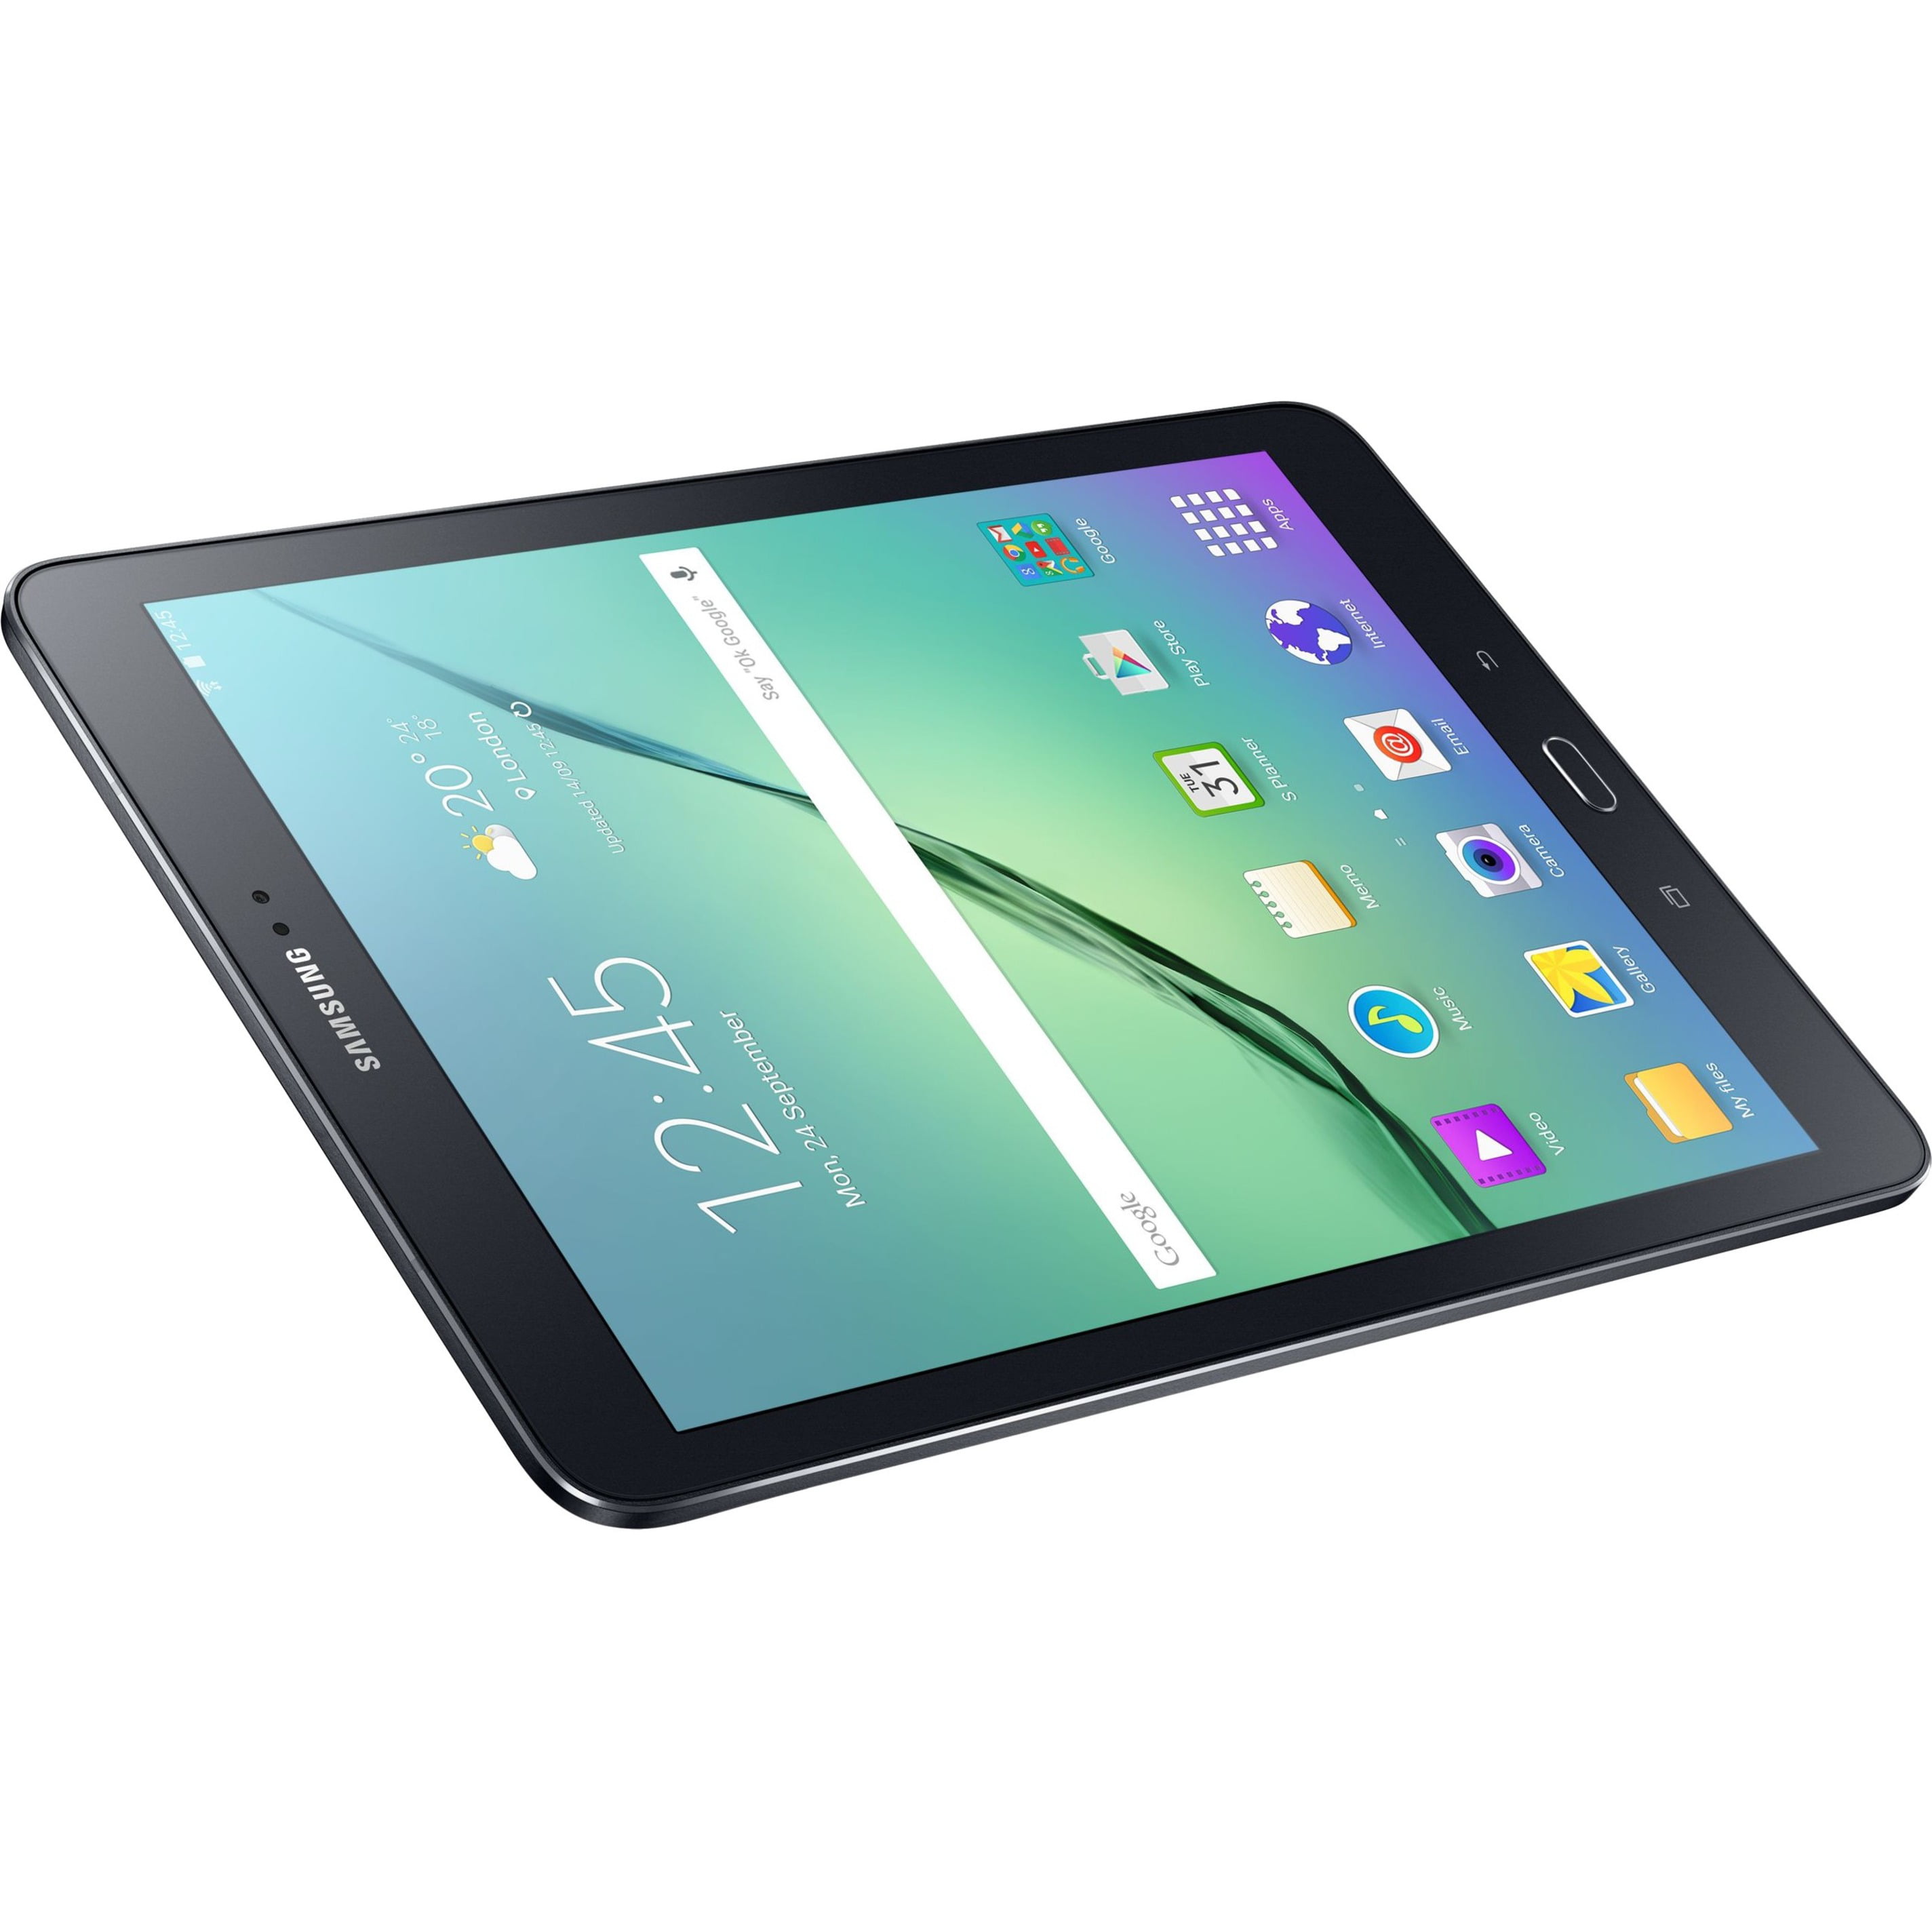 Samsung Galaxy Tab S 2 de 9.7″ aparece en GFXBench